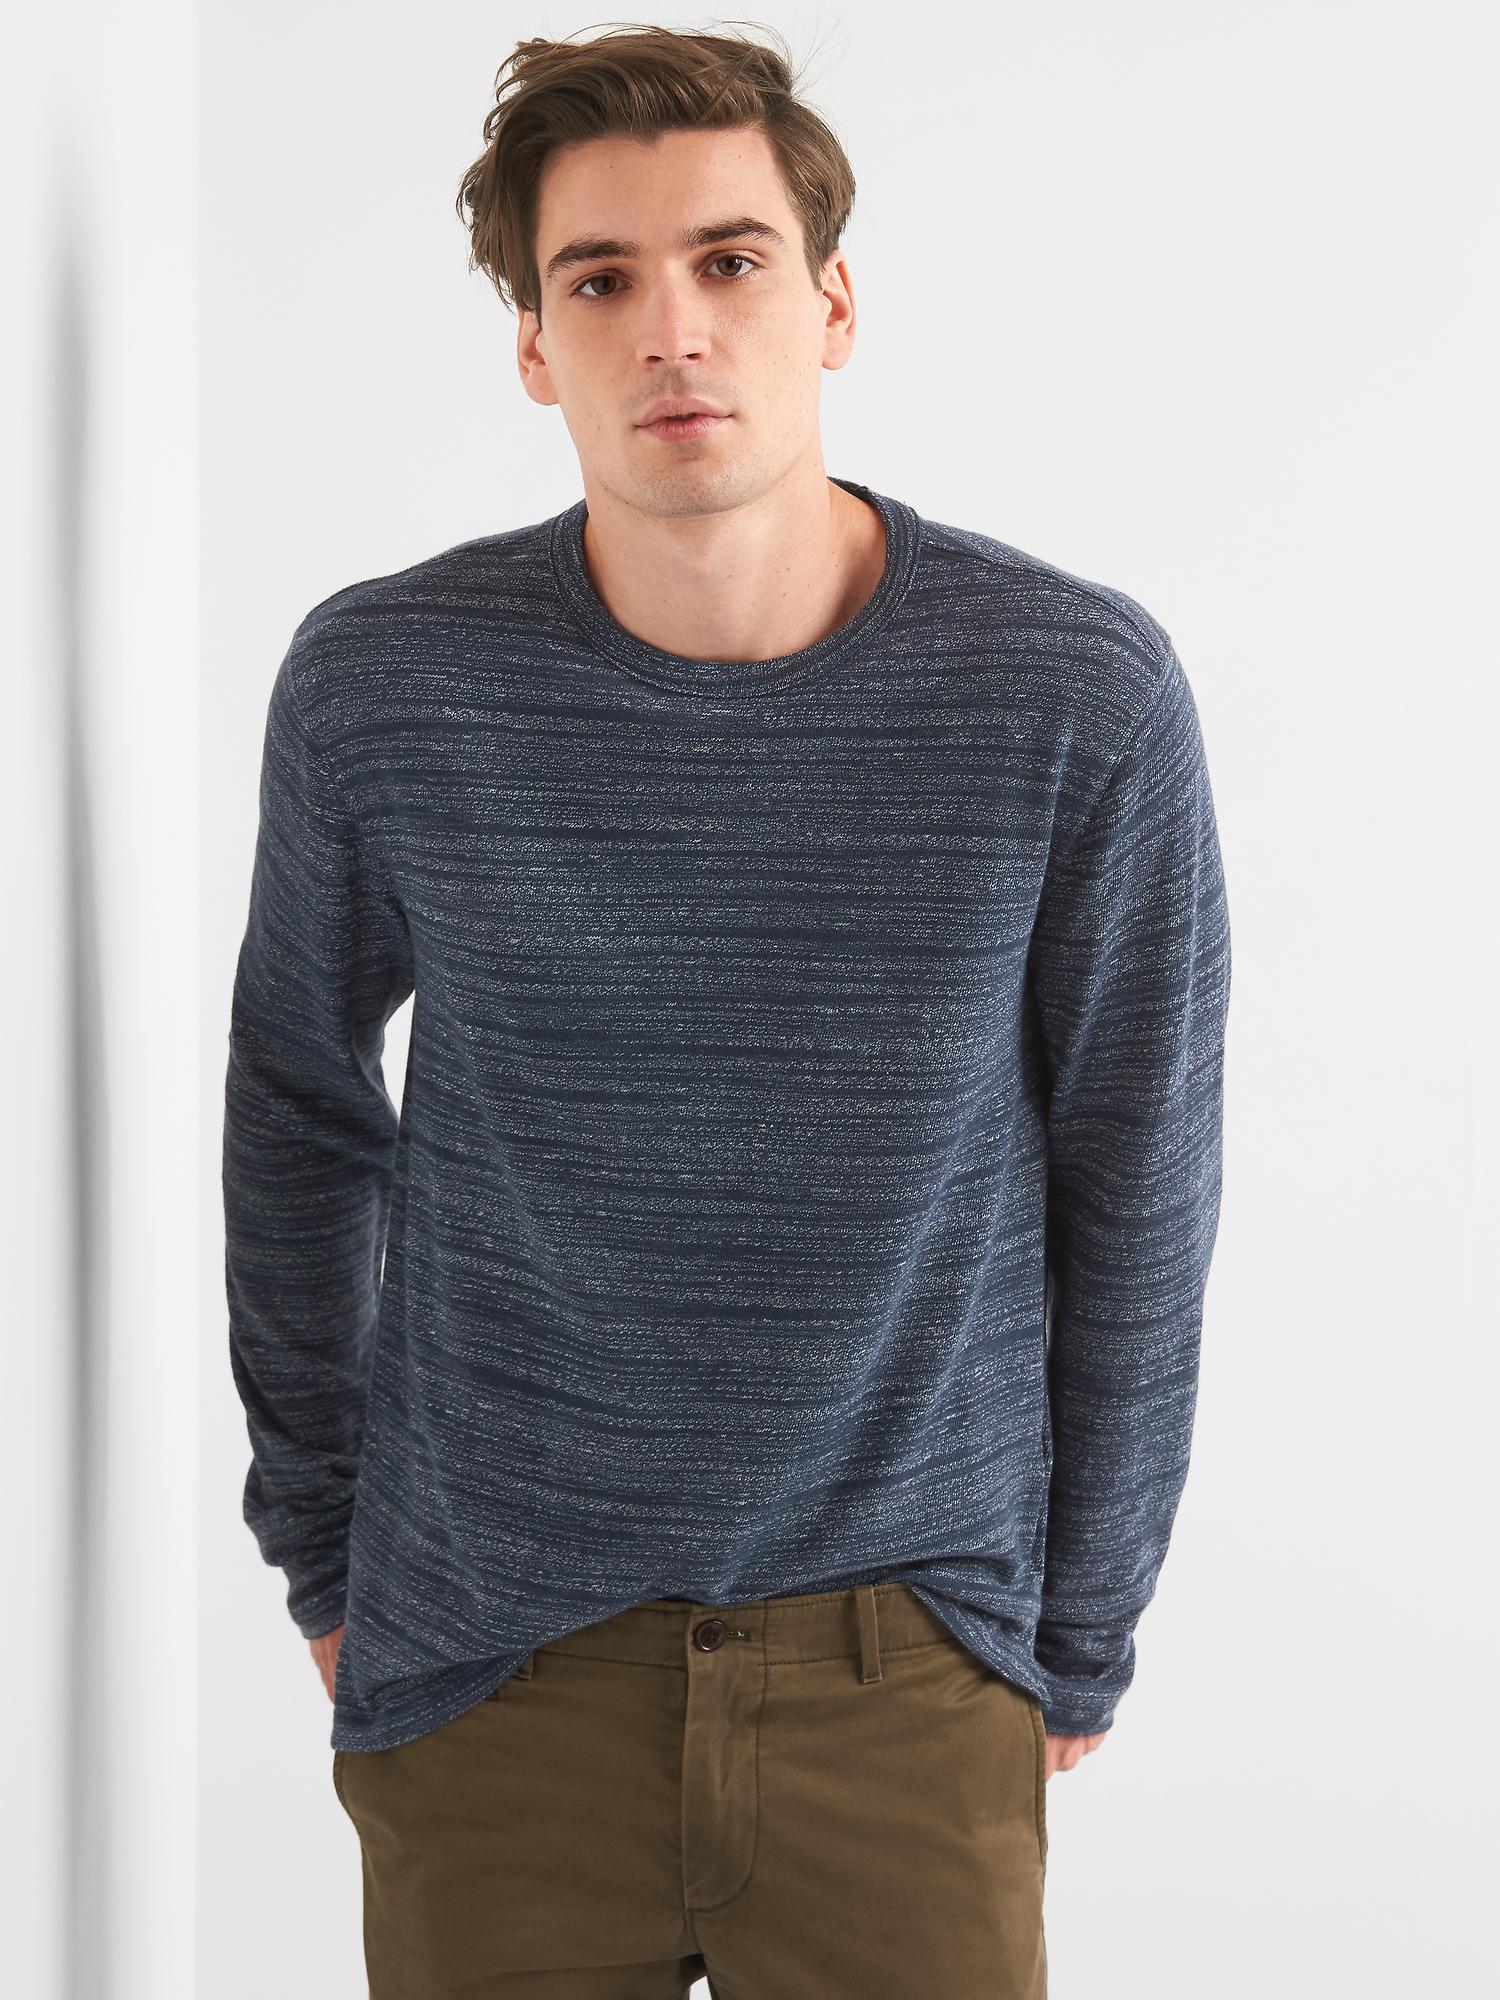 Softspun Long Sleeve Crewneck T-Shirt | Gap